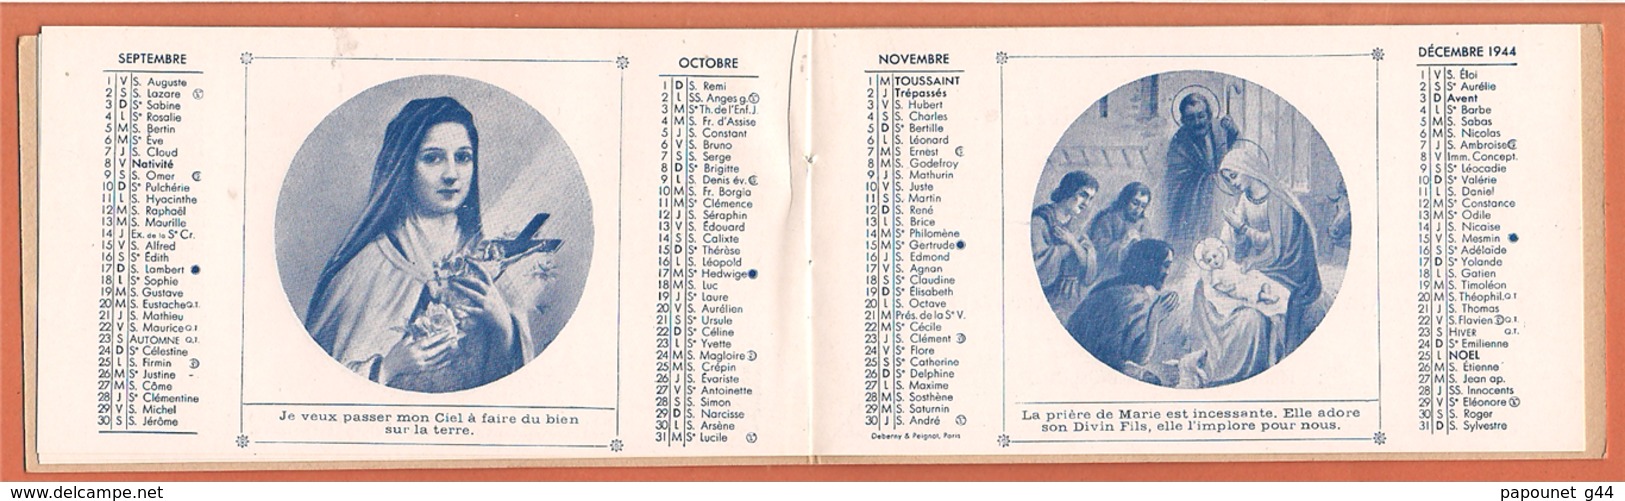 Almanach Religieux 1944 ( Heureuse et Sainte Année )